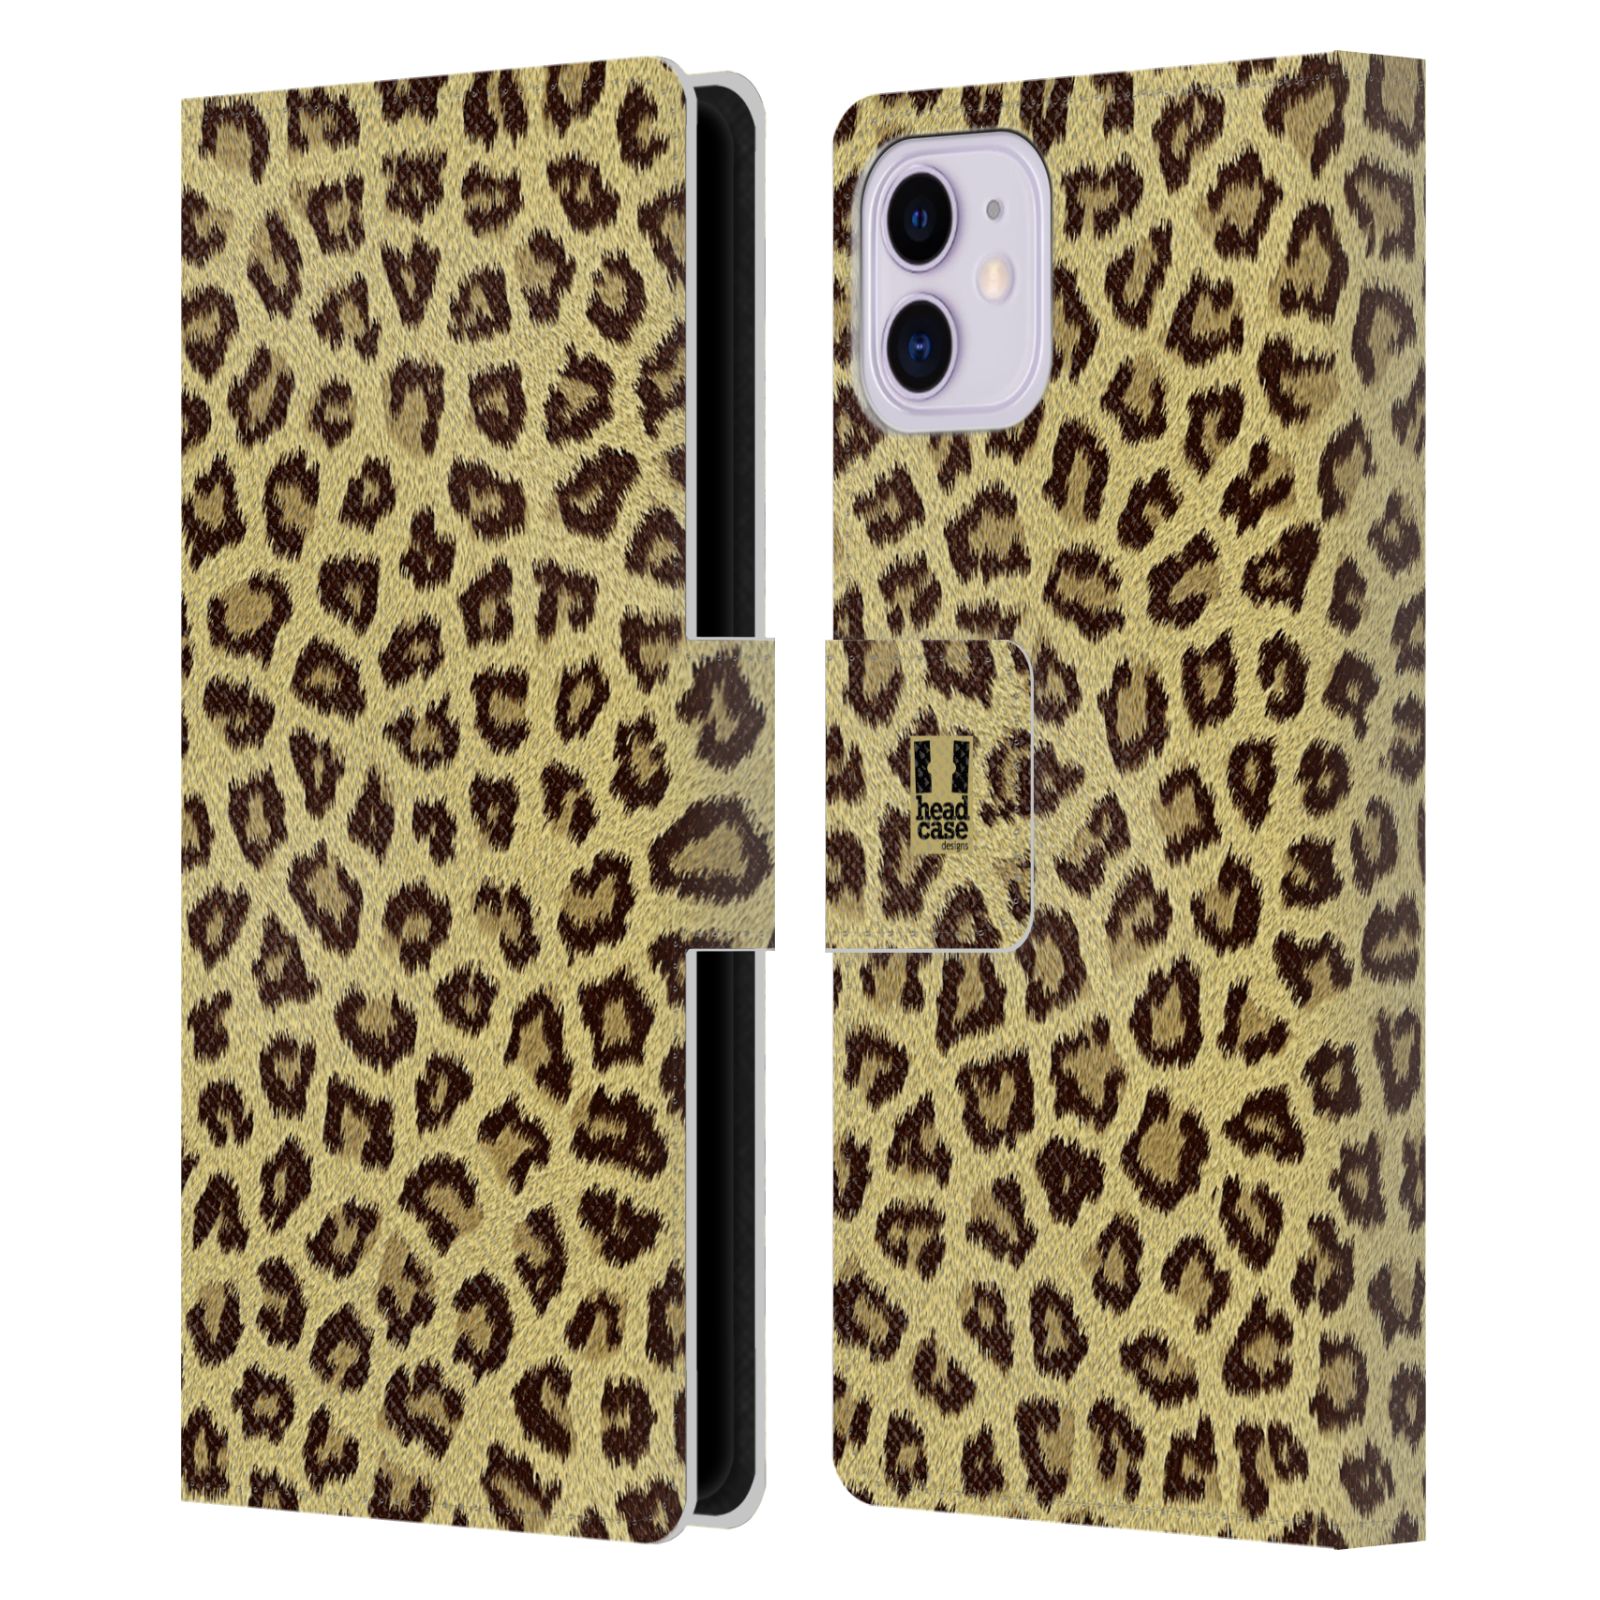 Pouzdro na mobil Apple Iphone 11 zvíře srst divoká kolekce jaguár, gepard